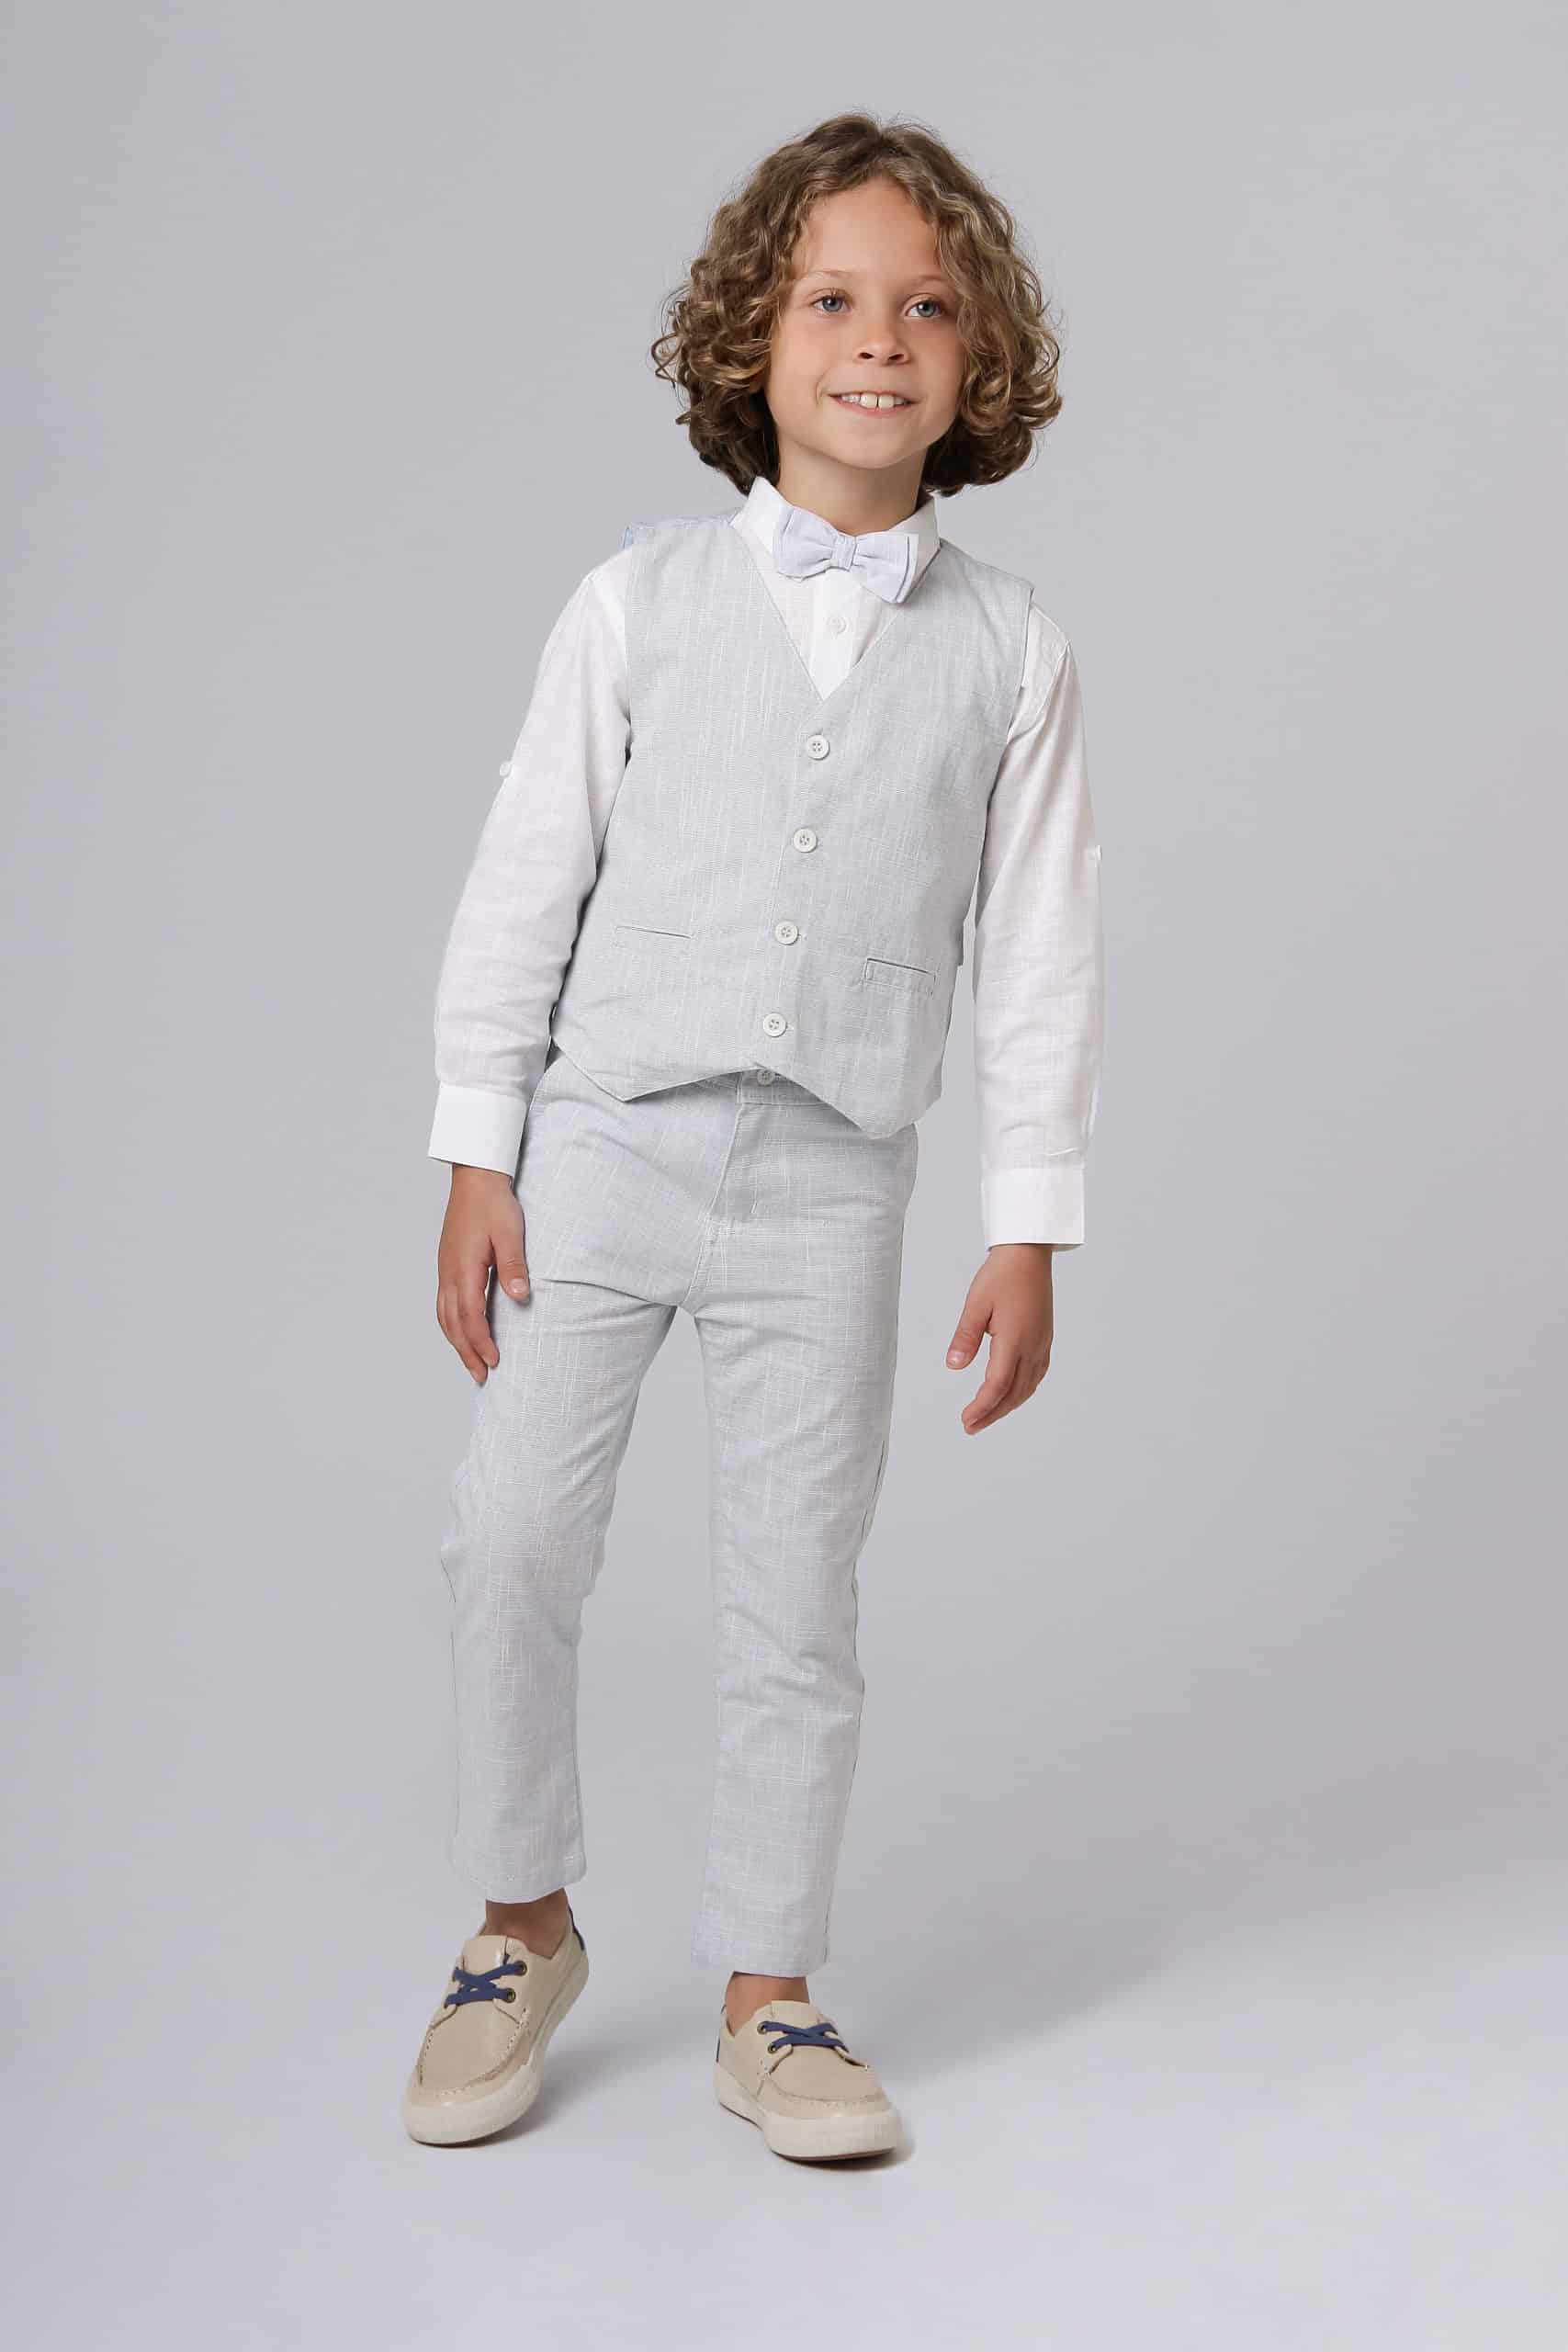 Conjunto Formatura Infantil Menino com Camisa Manga Longa Calça